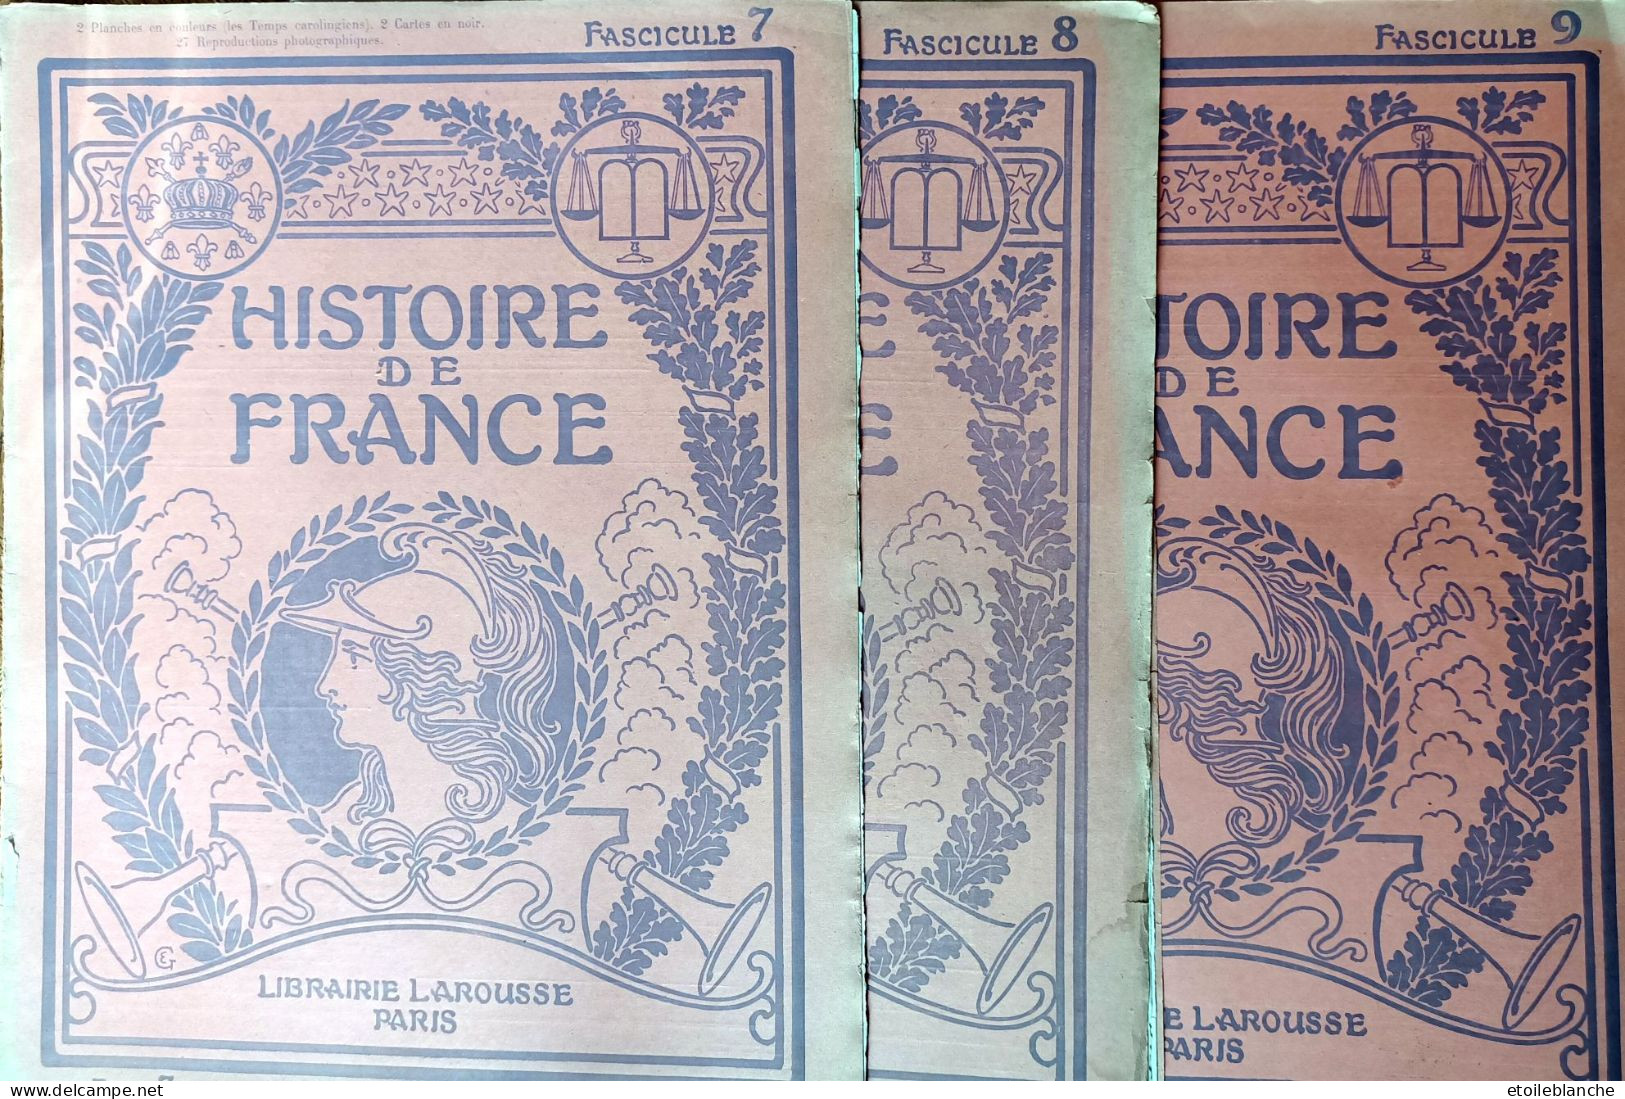 Histoire De France, Fascicules 7-8-9 - Capétiens Guillaume Le Conquerant, Bouvines, St Louis - Librairie Larousse Paris - Encyclopédies